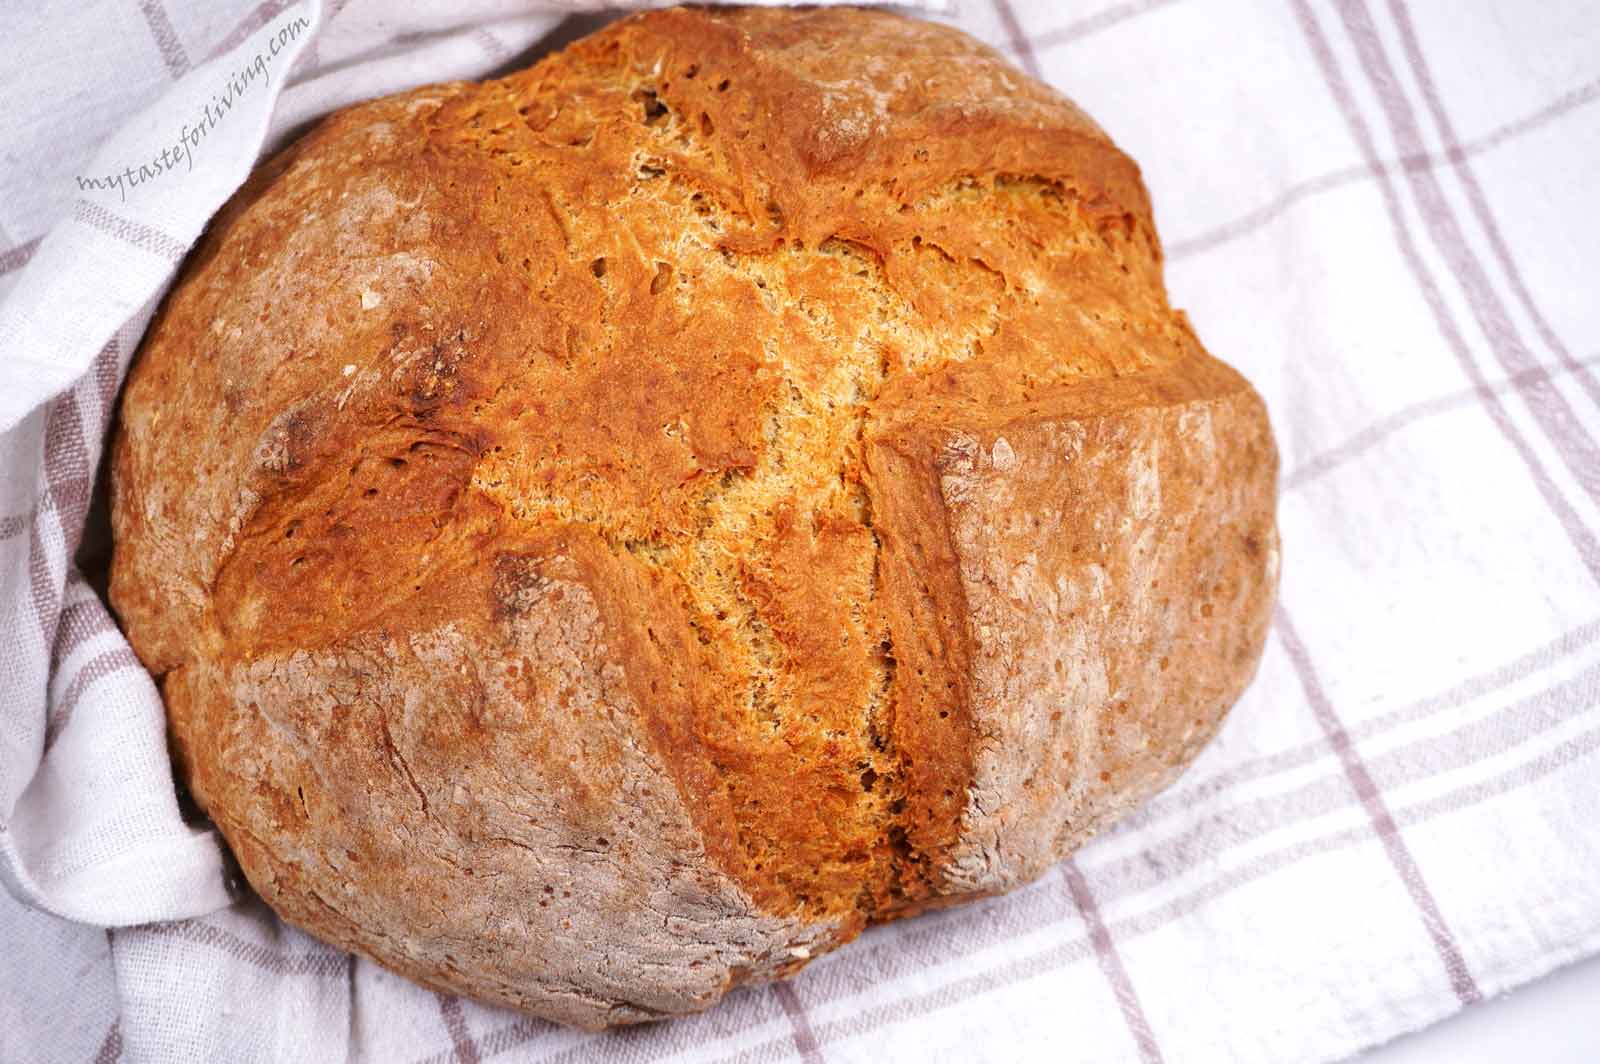 Традиционният ирландски хляб се приготвя от четири съставки – меко пшенично брашно (по възможност с ниско съдържание на глутен), сода бикарбонат, сол и мътеница (или айрян). Приготвя се изключително лесно и бързо - всички съставки се сместват и се получава тесто без много усилие, а след изпичането му се получава вкусен, ароматен и с апетитна коричка хляб. 